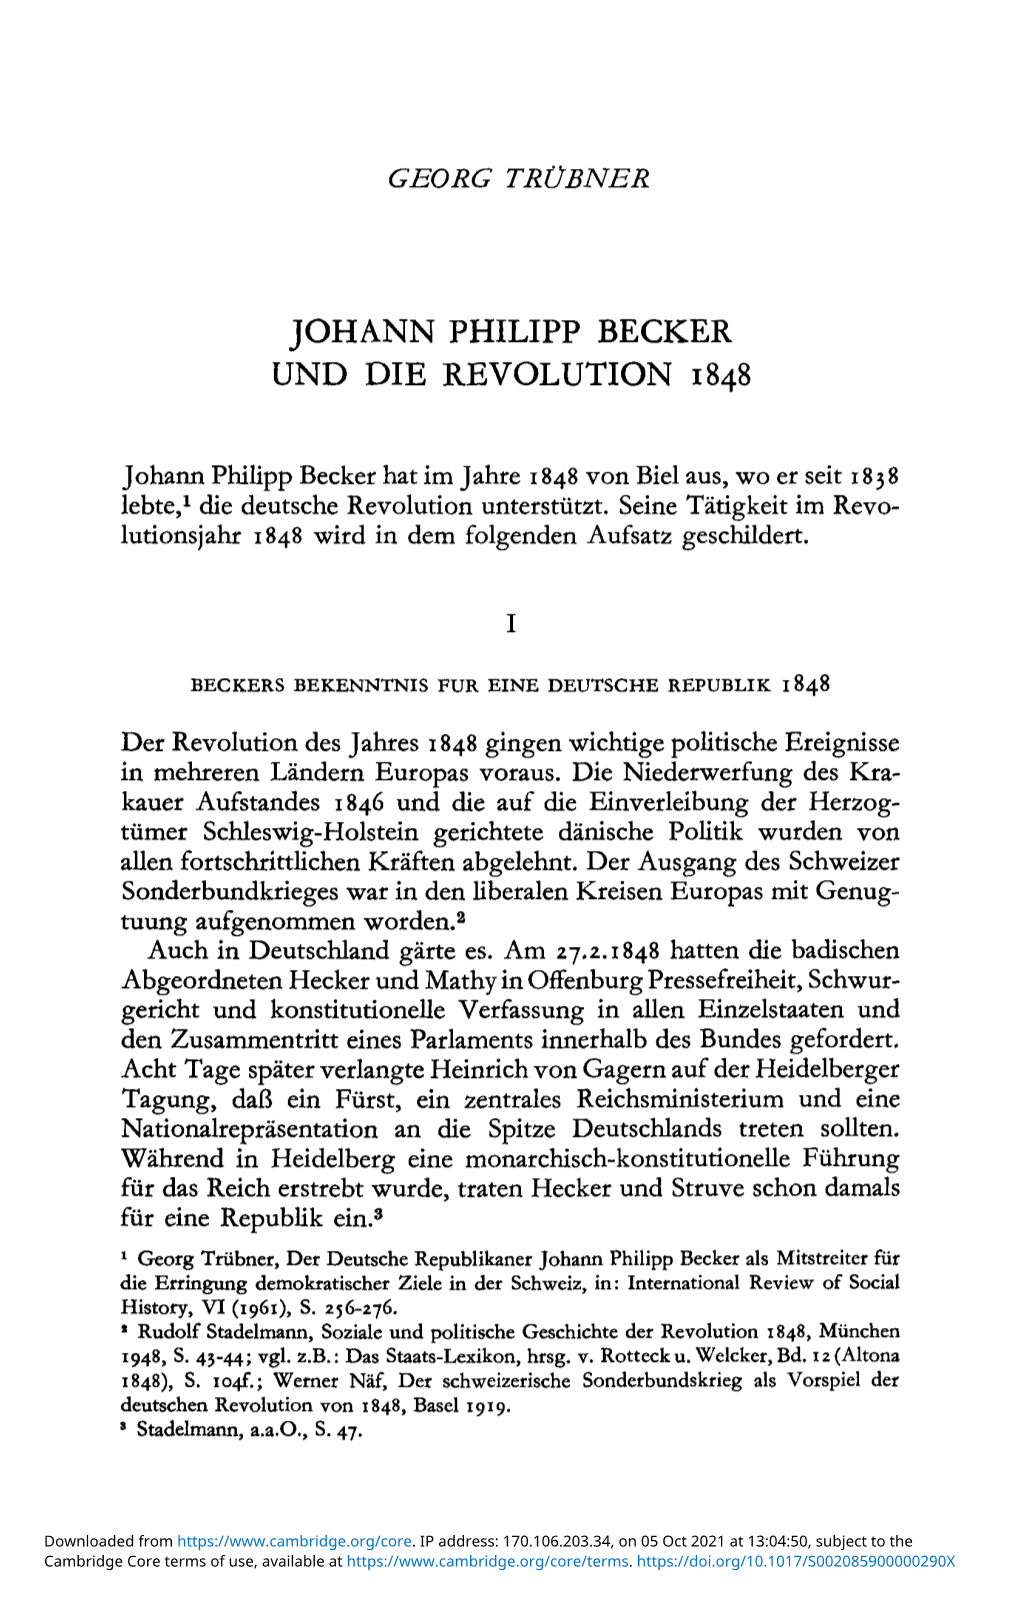 Johann Philipp Becker Und Die Revolution 1848